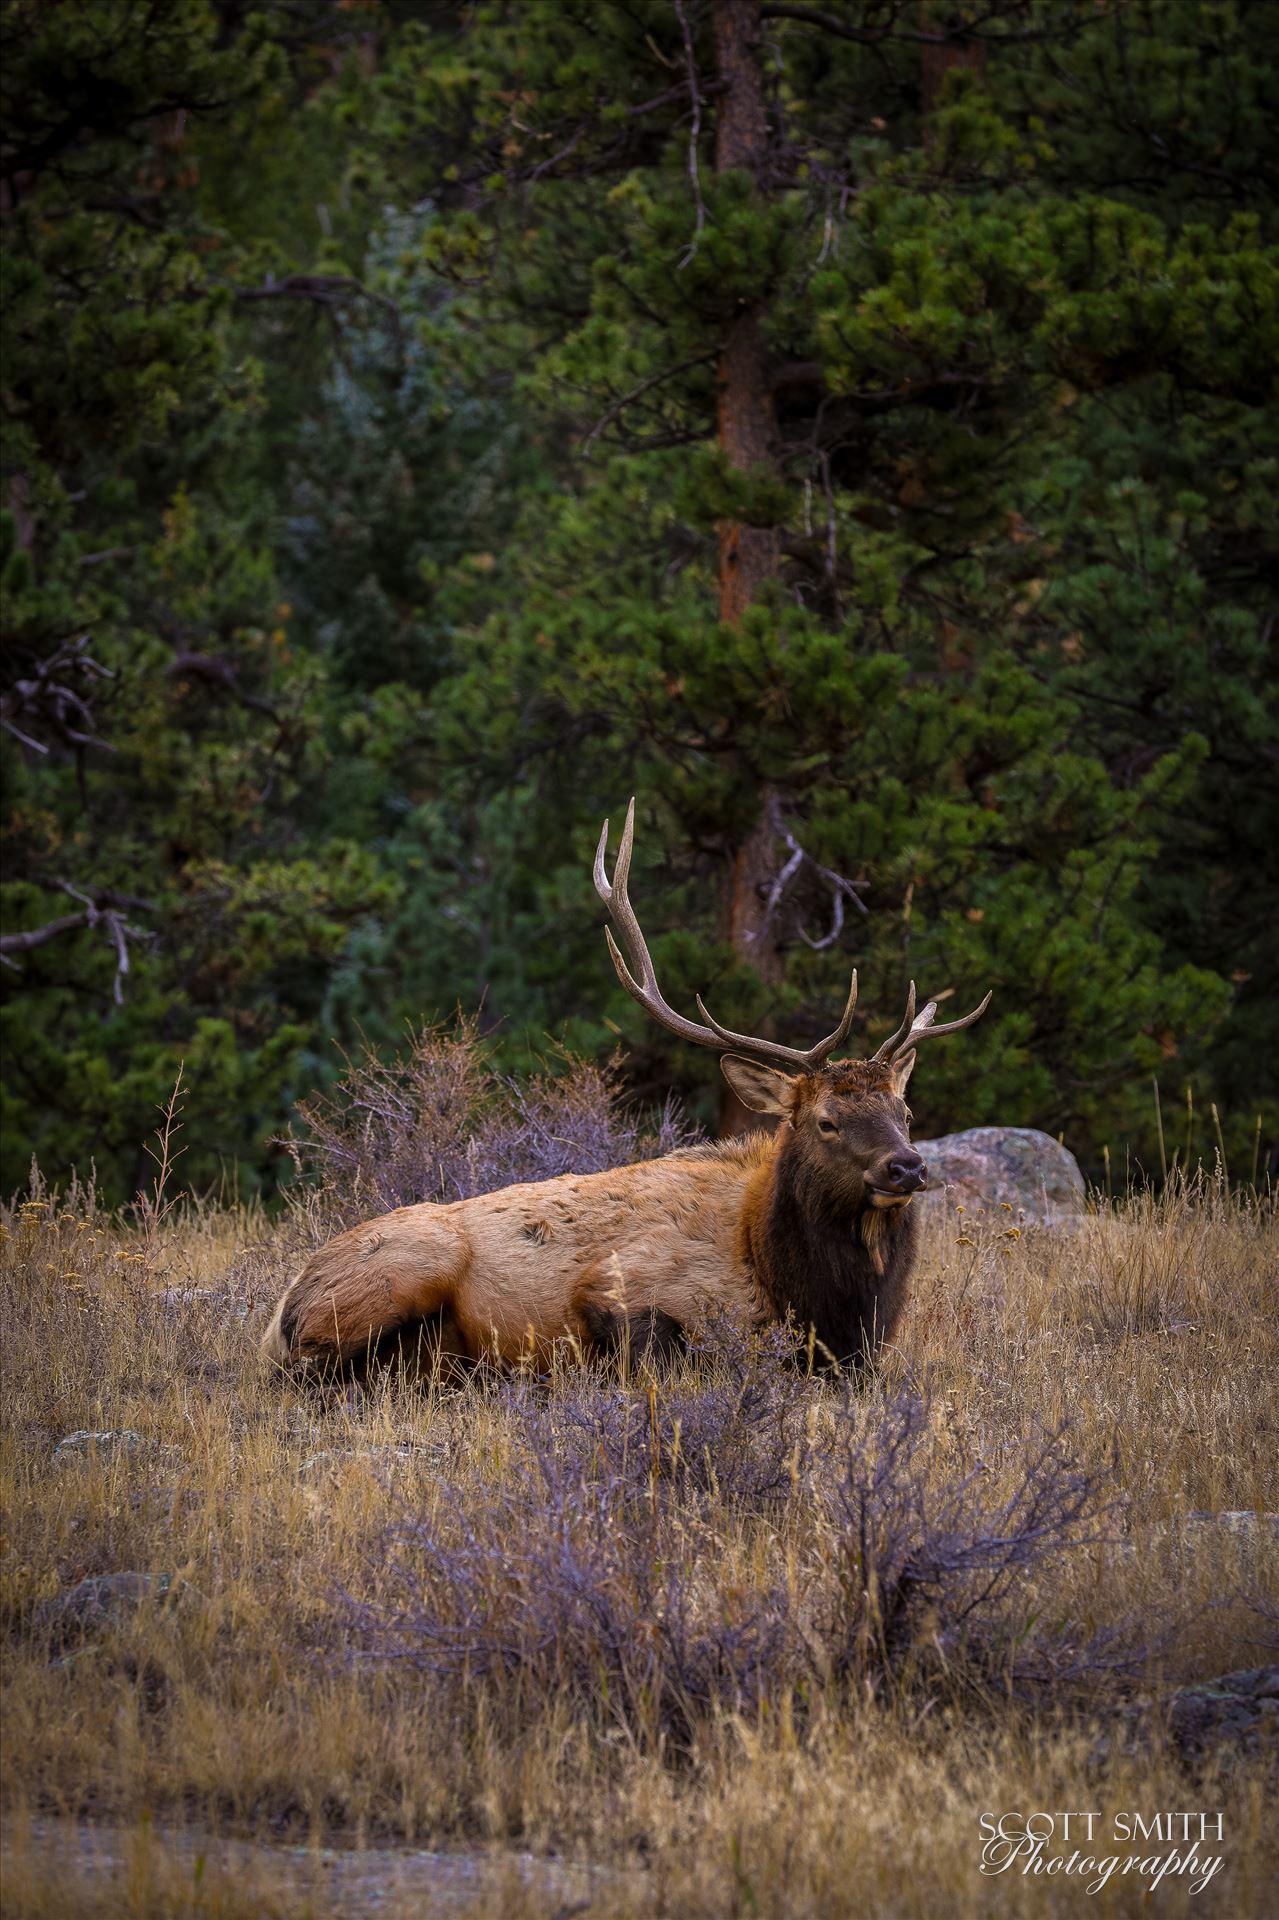 Sunday Elk No 08 - A heard of Elk near the entrance to Rocky Mountain National Park, Estes Park, Colorado. by Scott Smith Photos